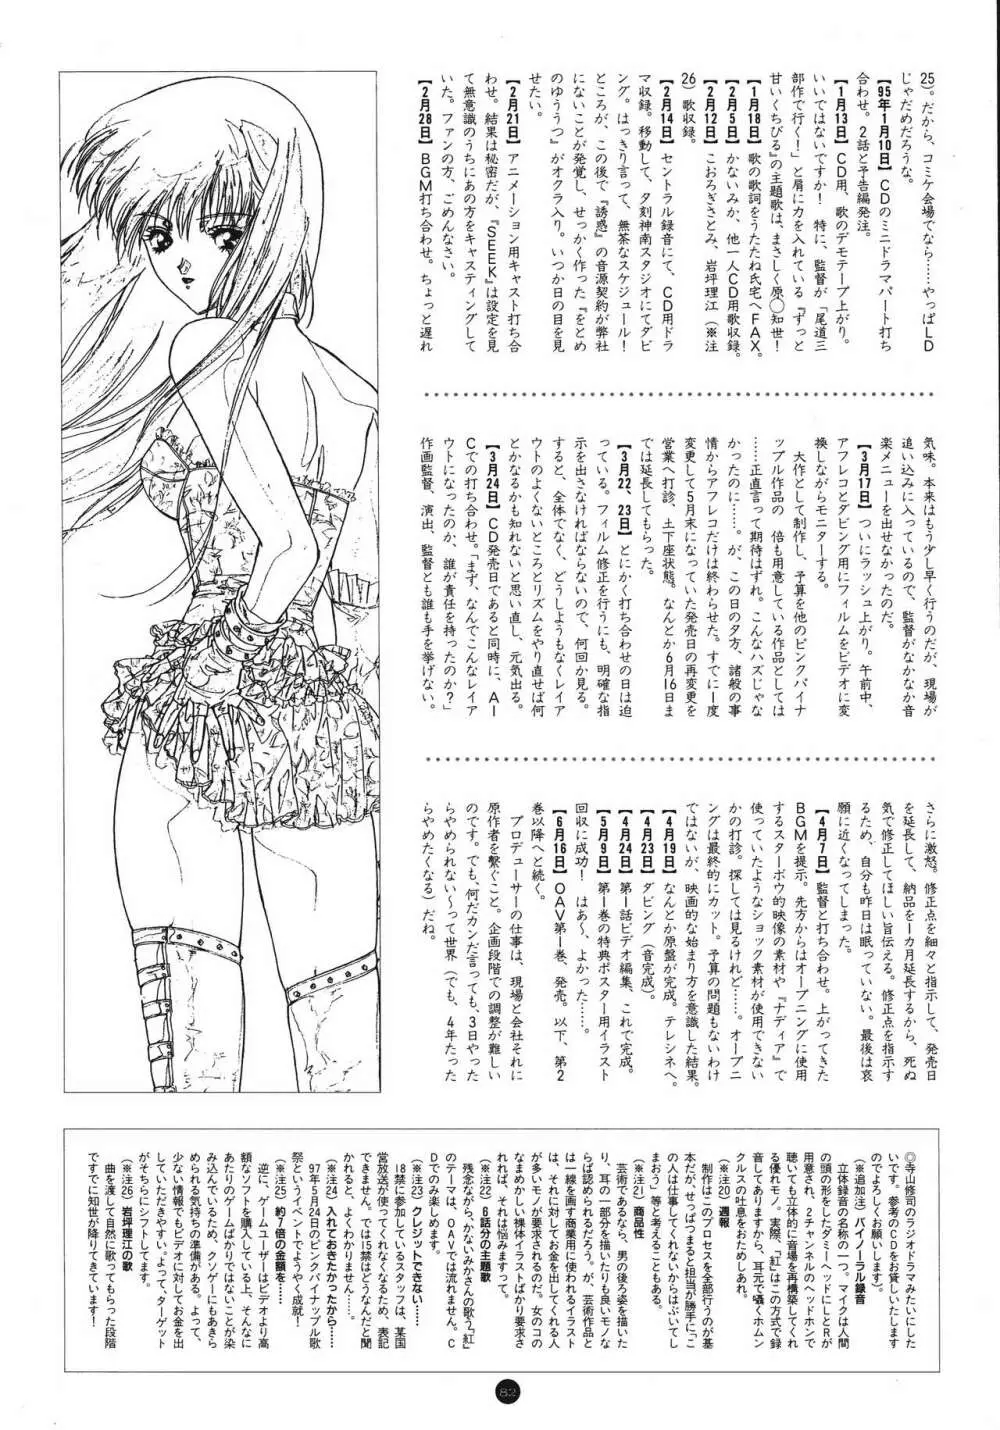 誘惑COUNT DOWN Vol.1 OMNIBUS Perfect Collection 86ページ